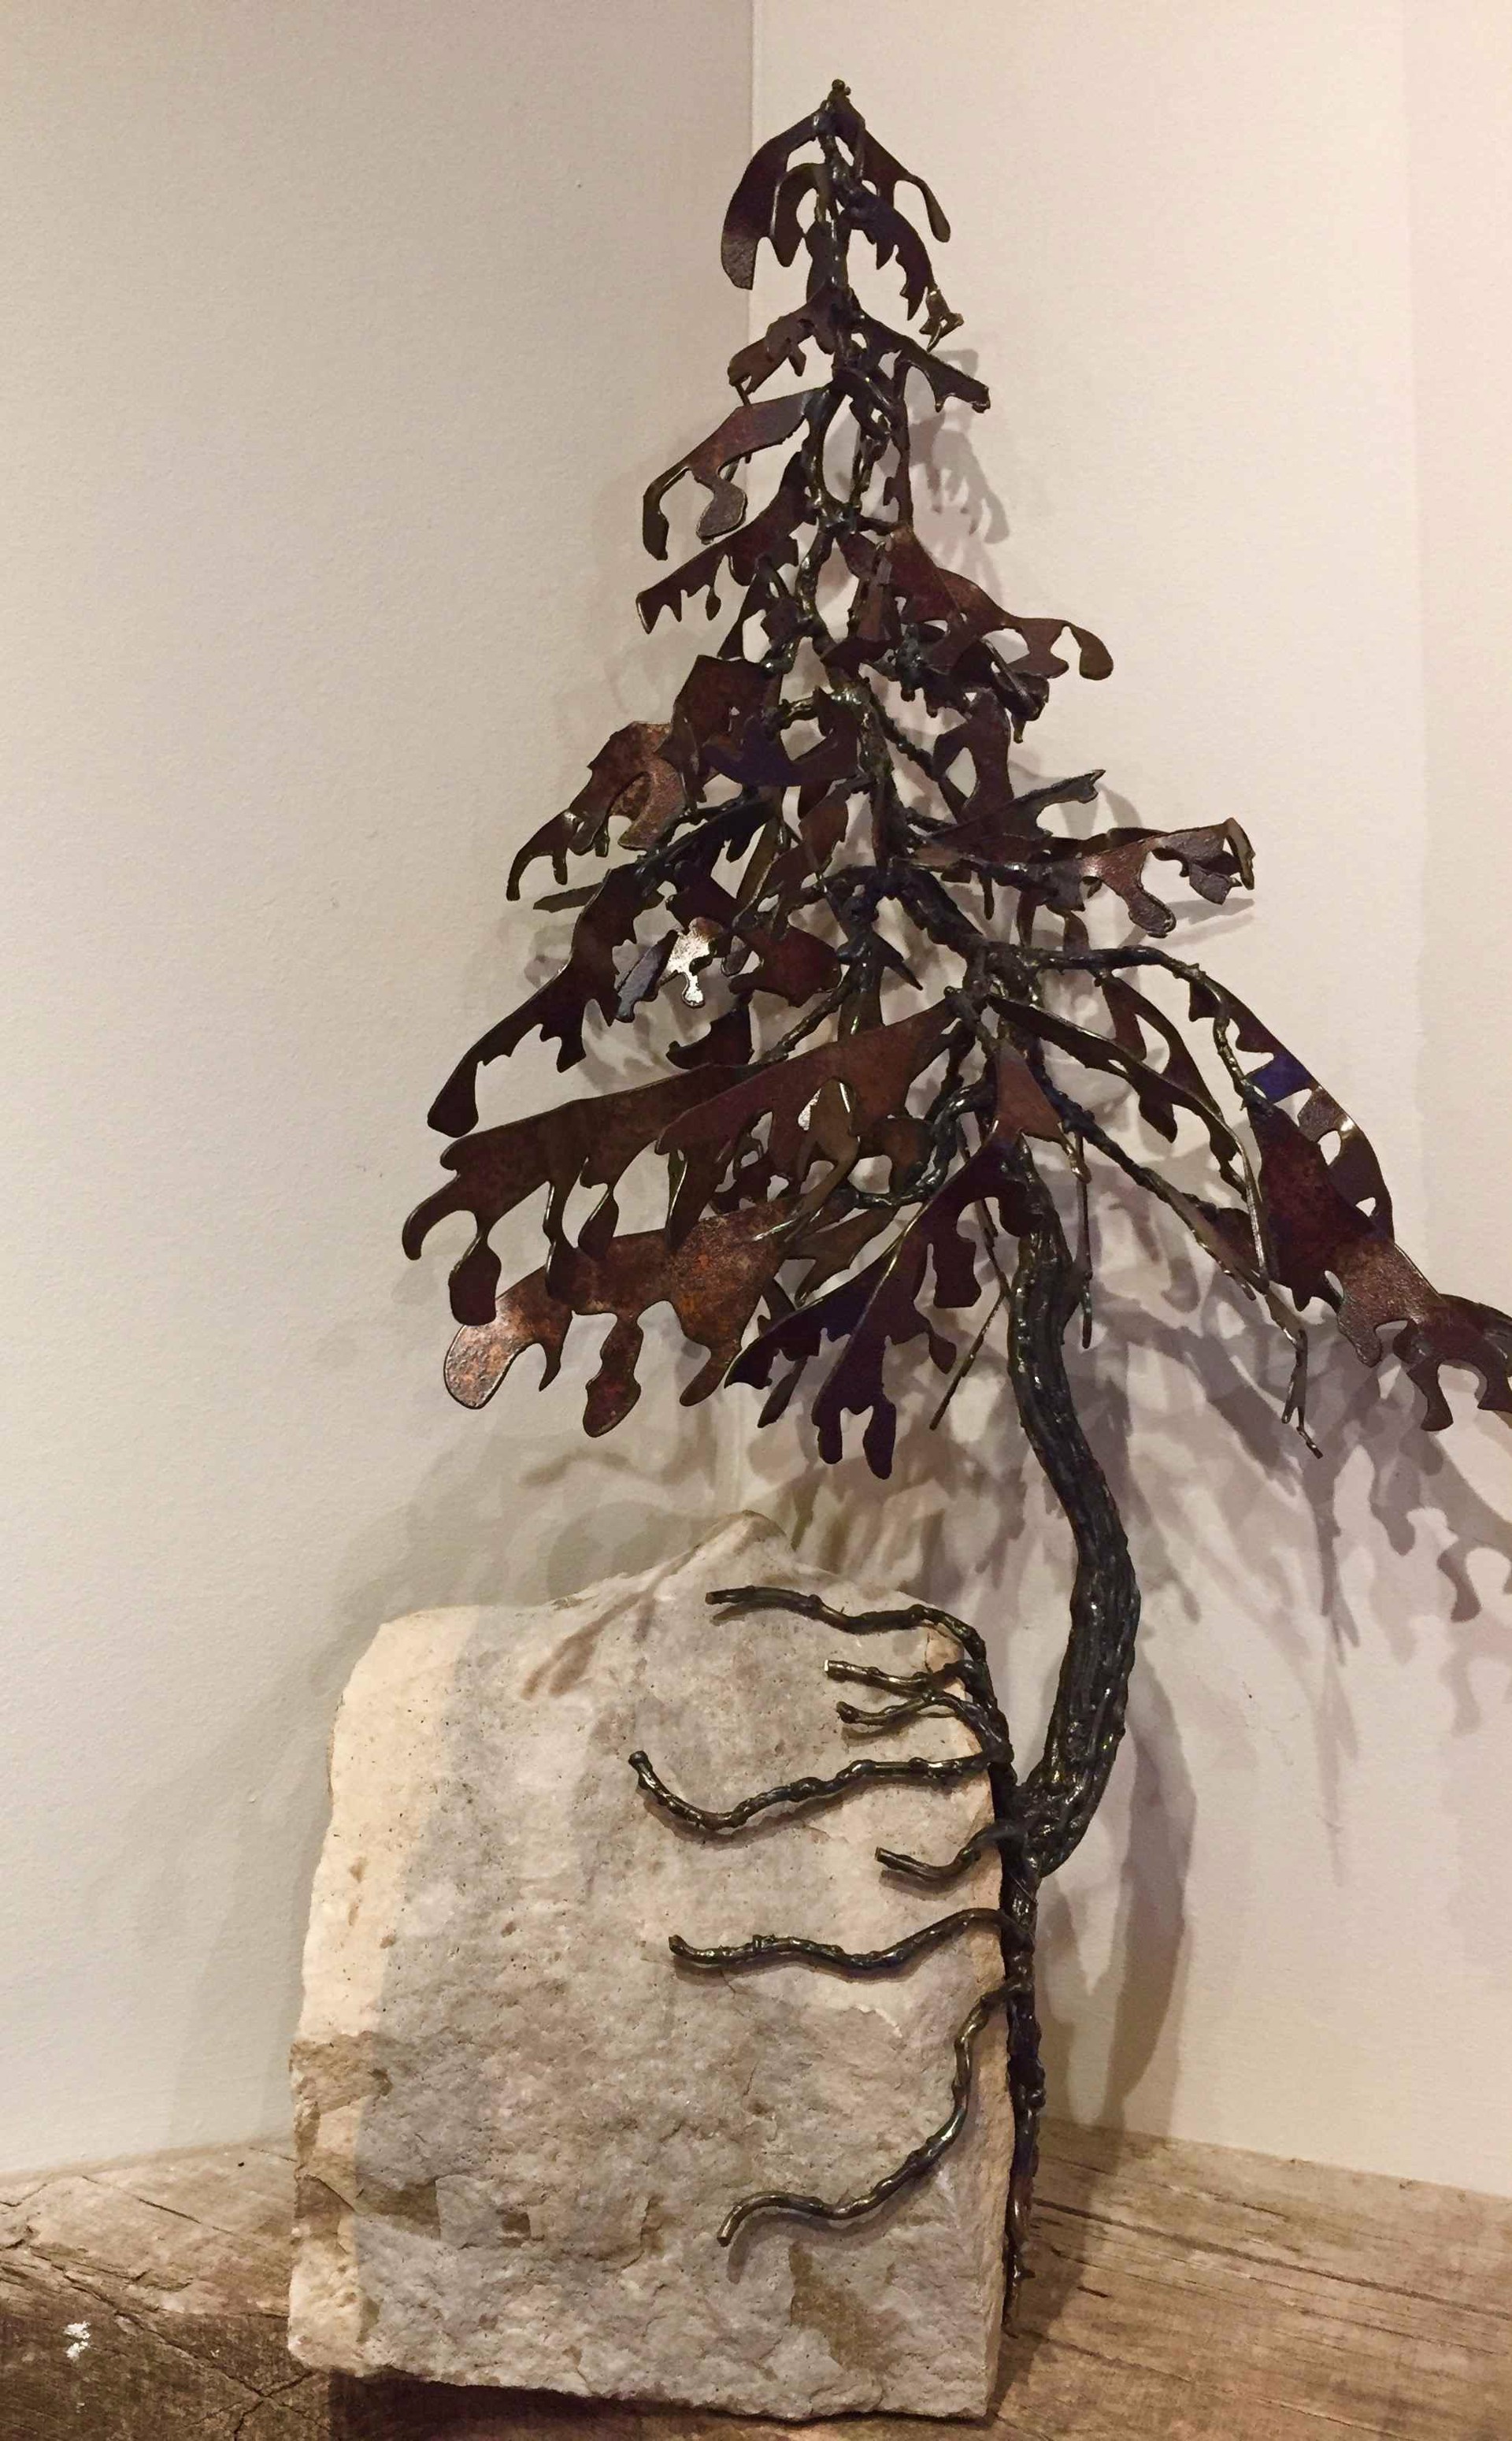 Pine Tree in Rock 17-607 by Floyd Elzinga